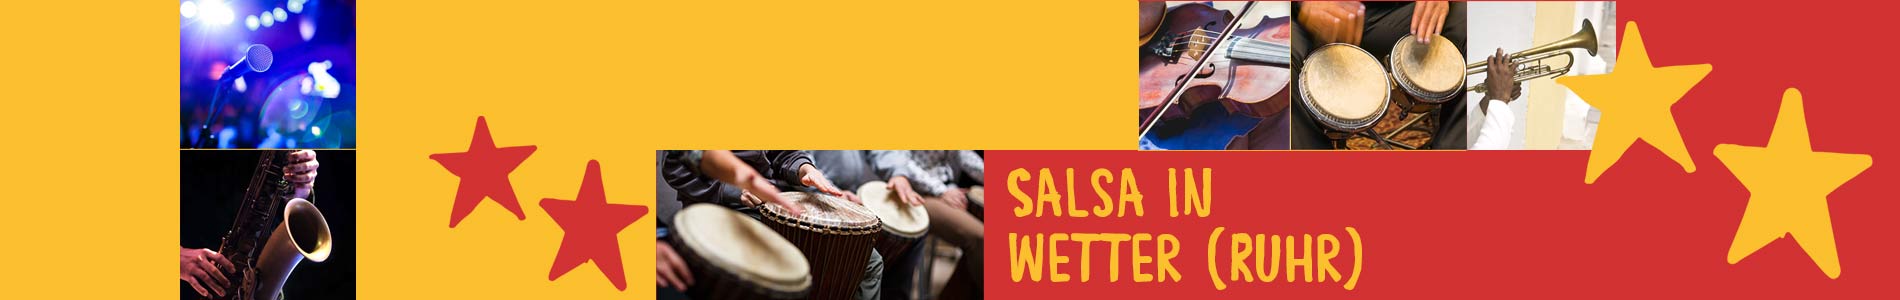 Salsa in Wetter (Ruhr) – Salsa lernen und tanzen, Tanzkurse, Partys, Veranstaltungen